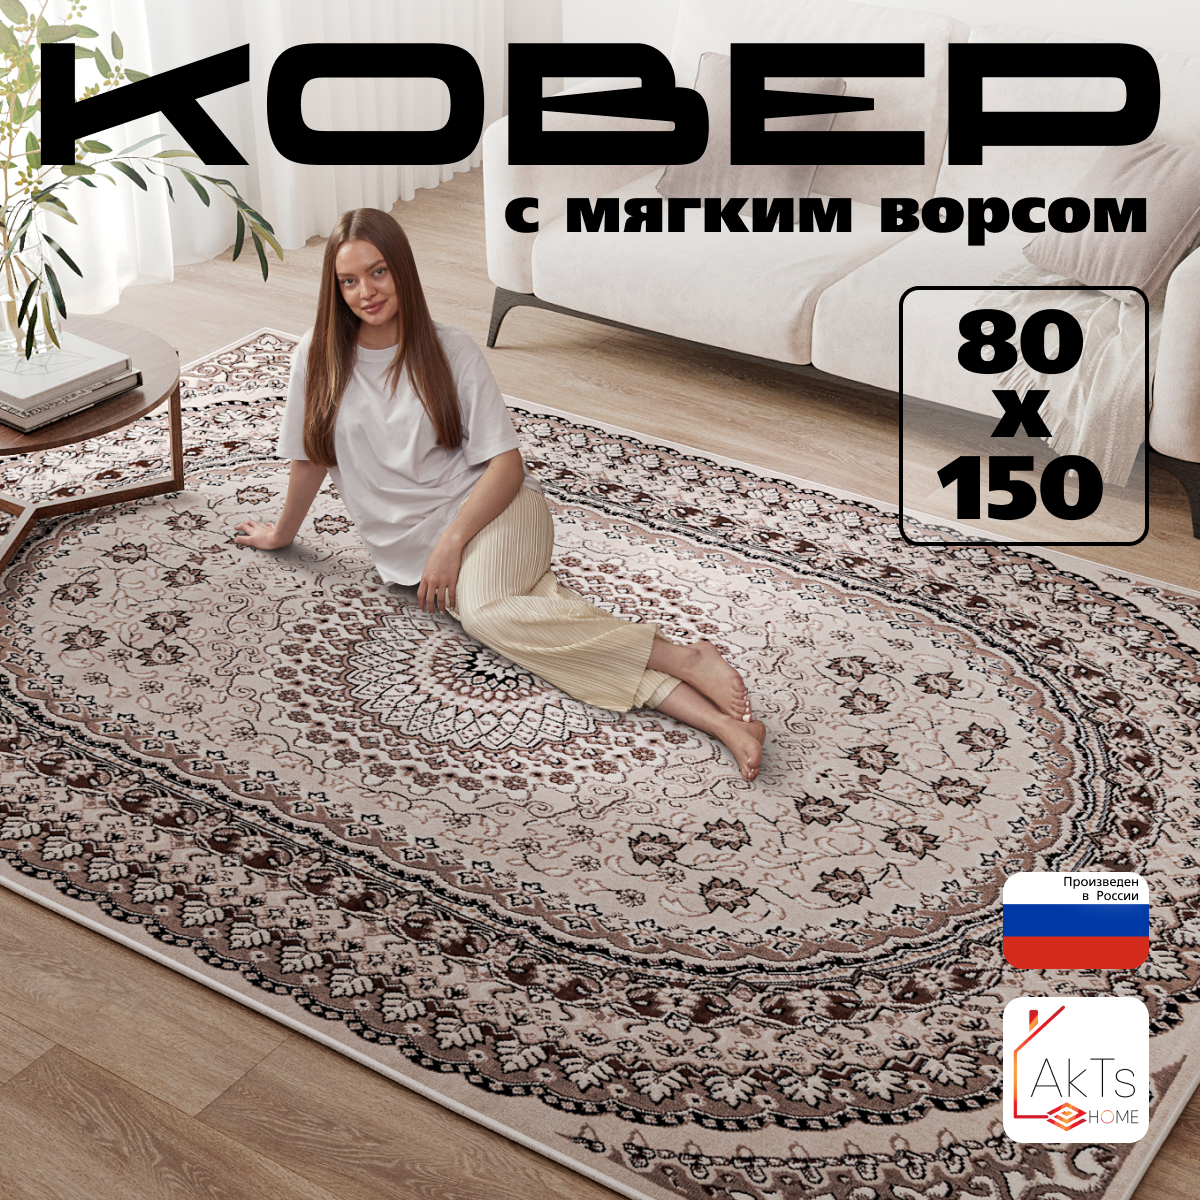 Российский прямоугольный ковер на пол 80 на 150 см в гостиную, зал, спальню, кухню, детскую, прихожую, кабинет, комнату